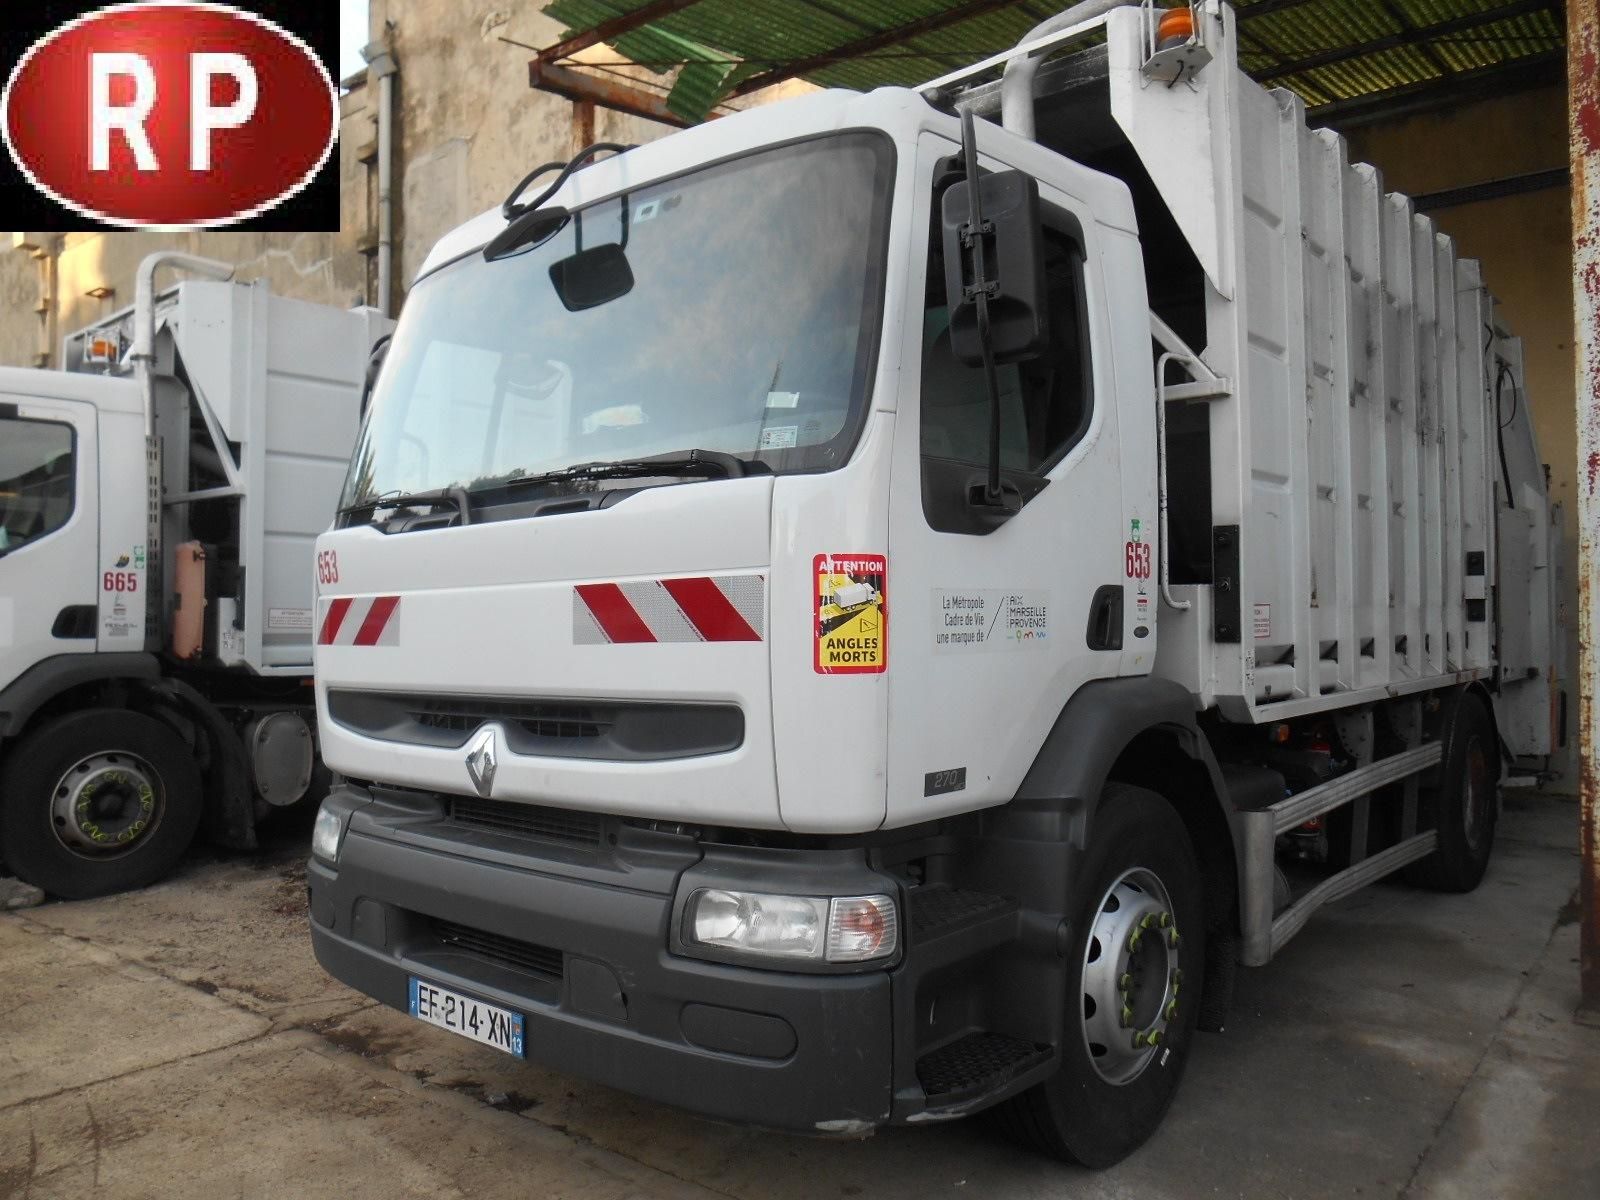 Null [RP] RENAULT 270 dCi 16m3 refuse truck, Diesel,
imm. EF-214-XN, Type 22ACB1&hellip;